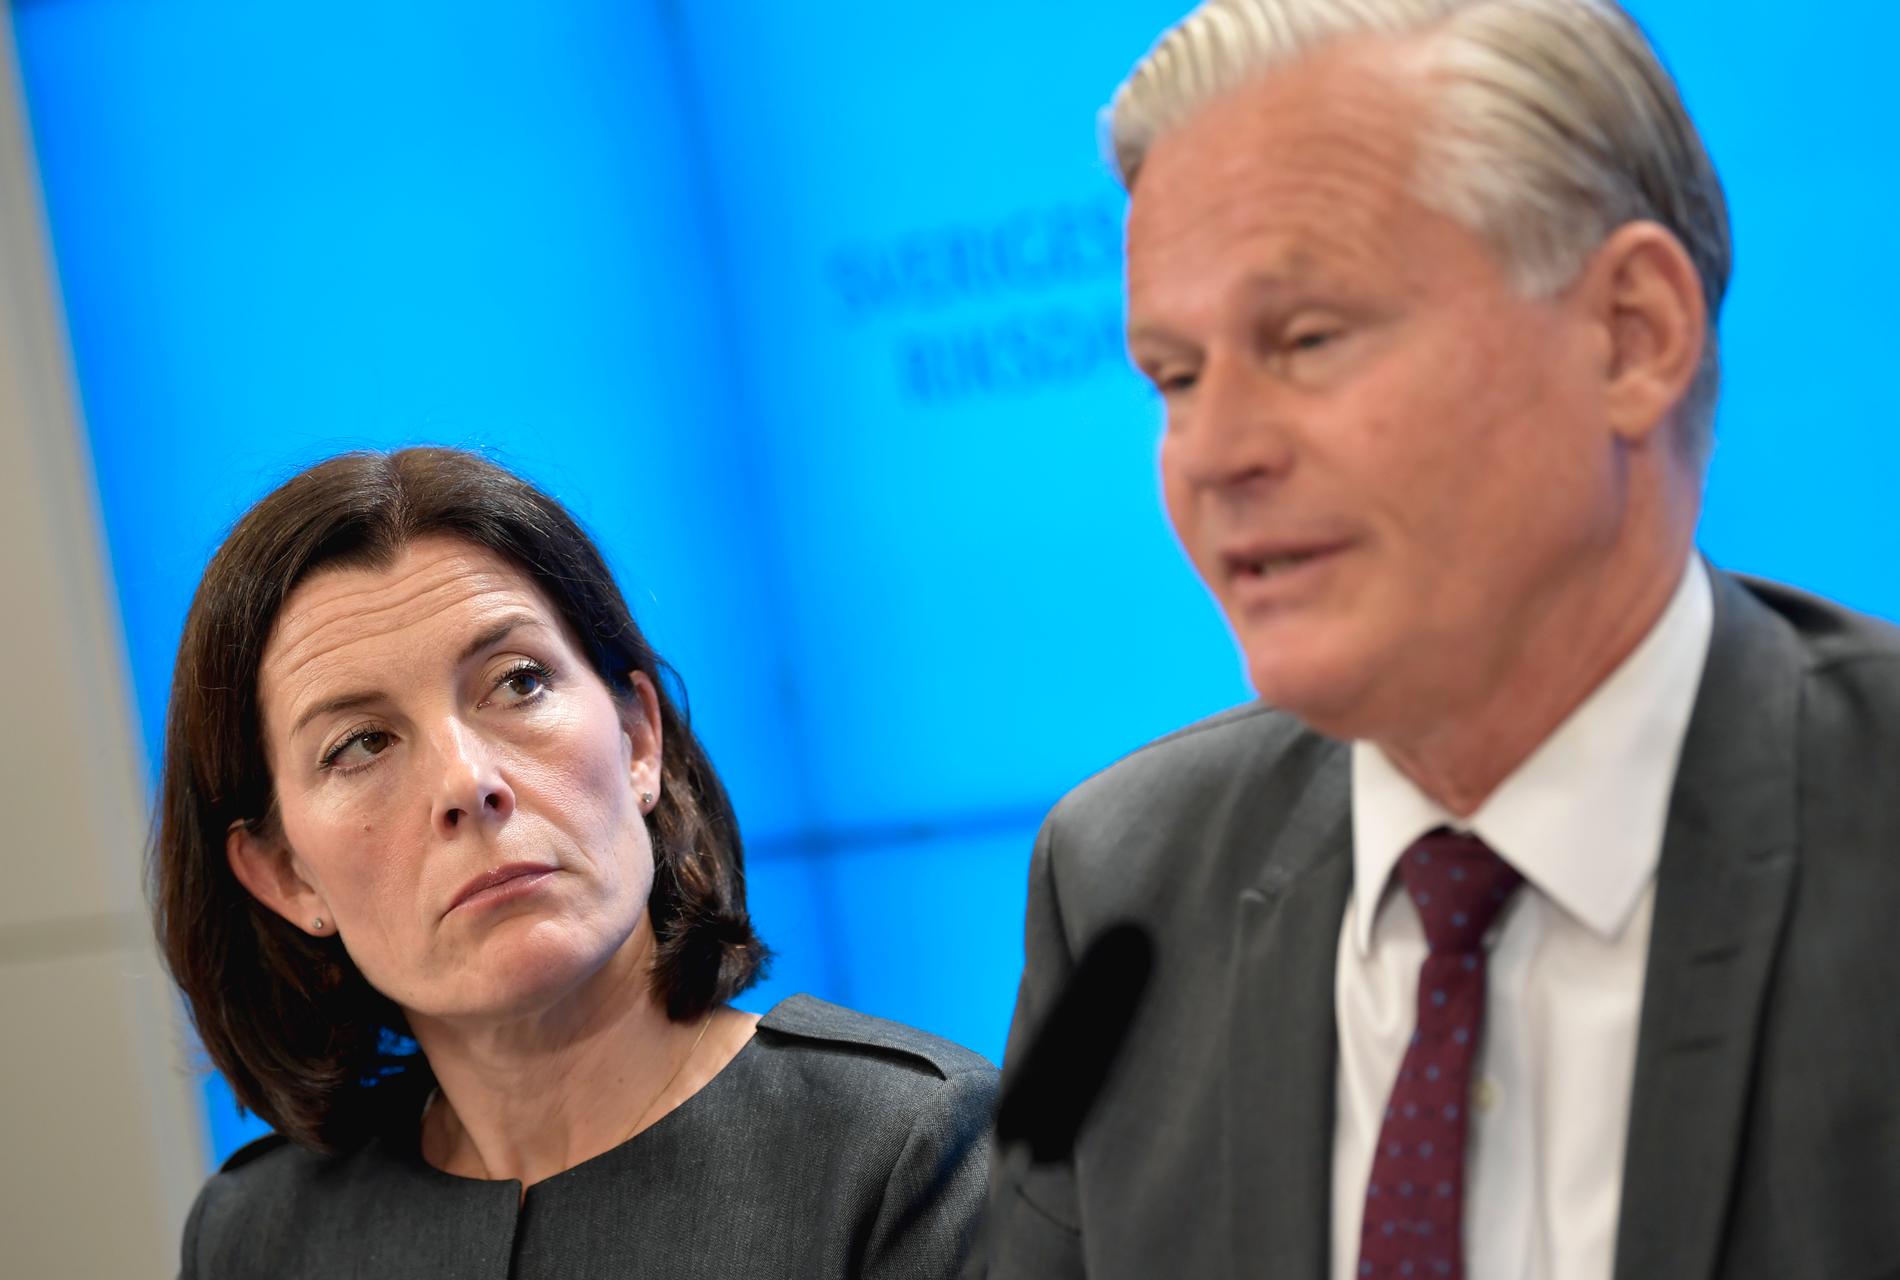 KU:s ordförande Karin Enström (M) och vice ordförande Hans Ekström (S) är båda kritiska till regeringens agerande vid petningen av Försäkringskassans generaldirektör.